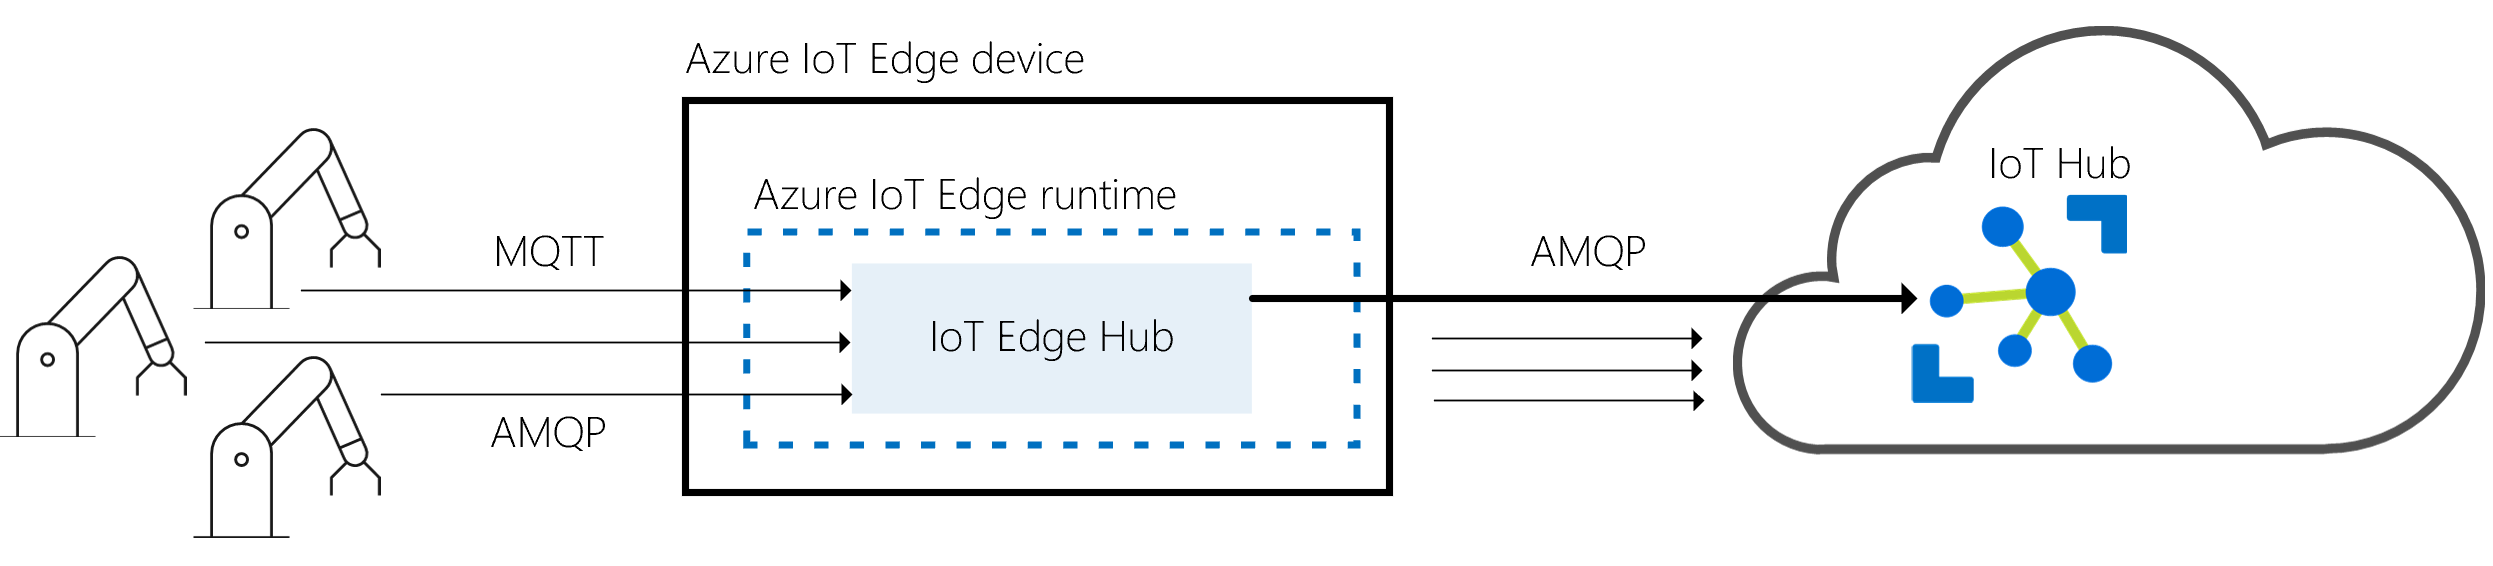 Capture d’écran montrant les relations avec le hub IoT Edge en tant que passerelle entre les appareils physiques et i o T Hub.